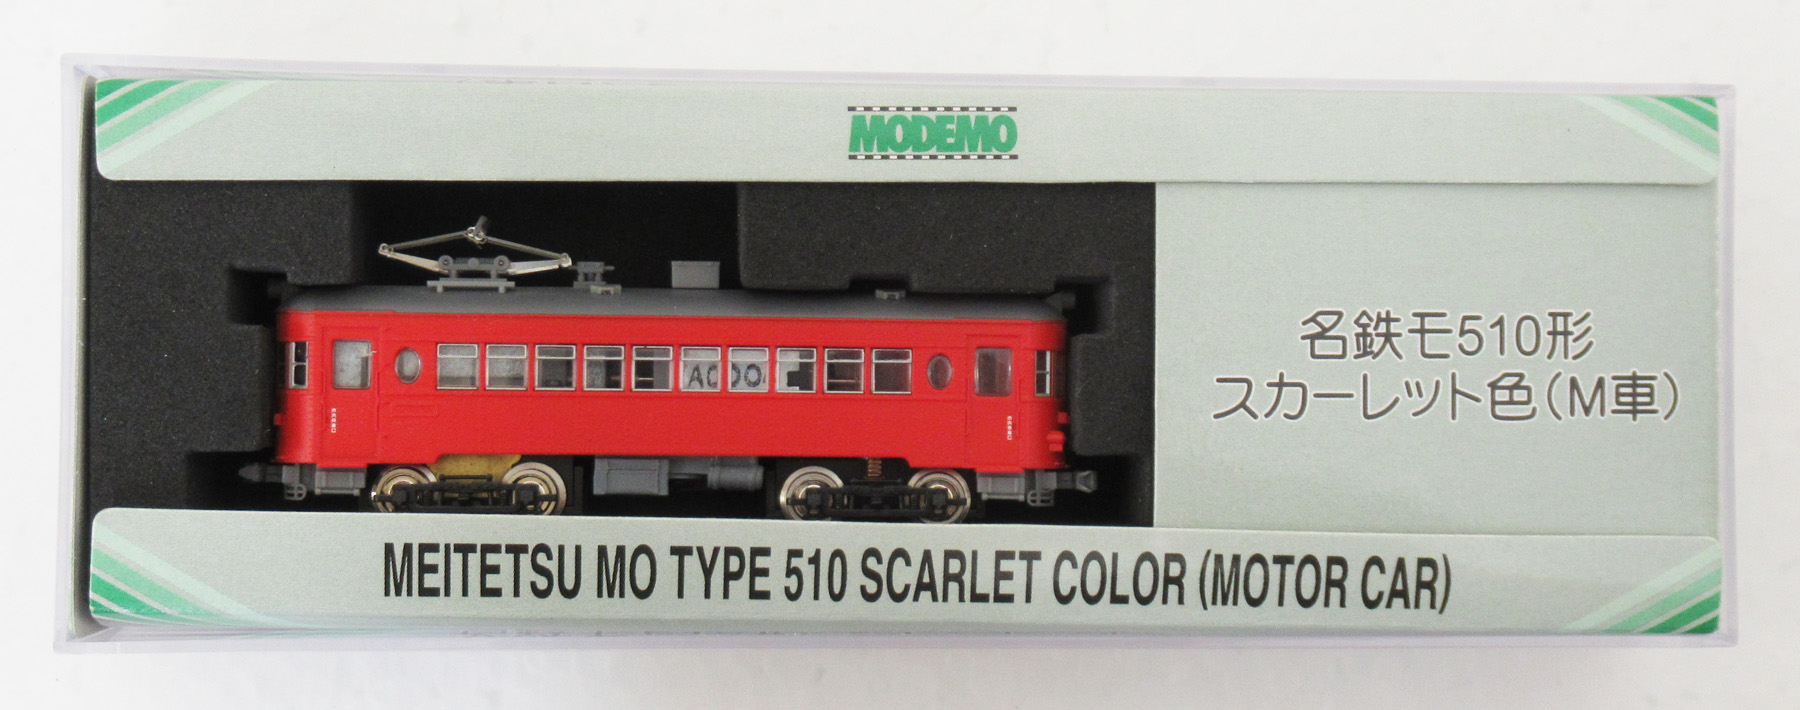 NT12 名鉄モ510S色M車 01年